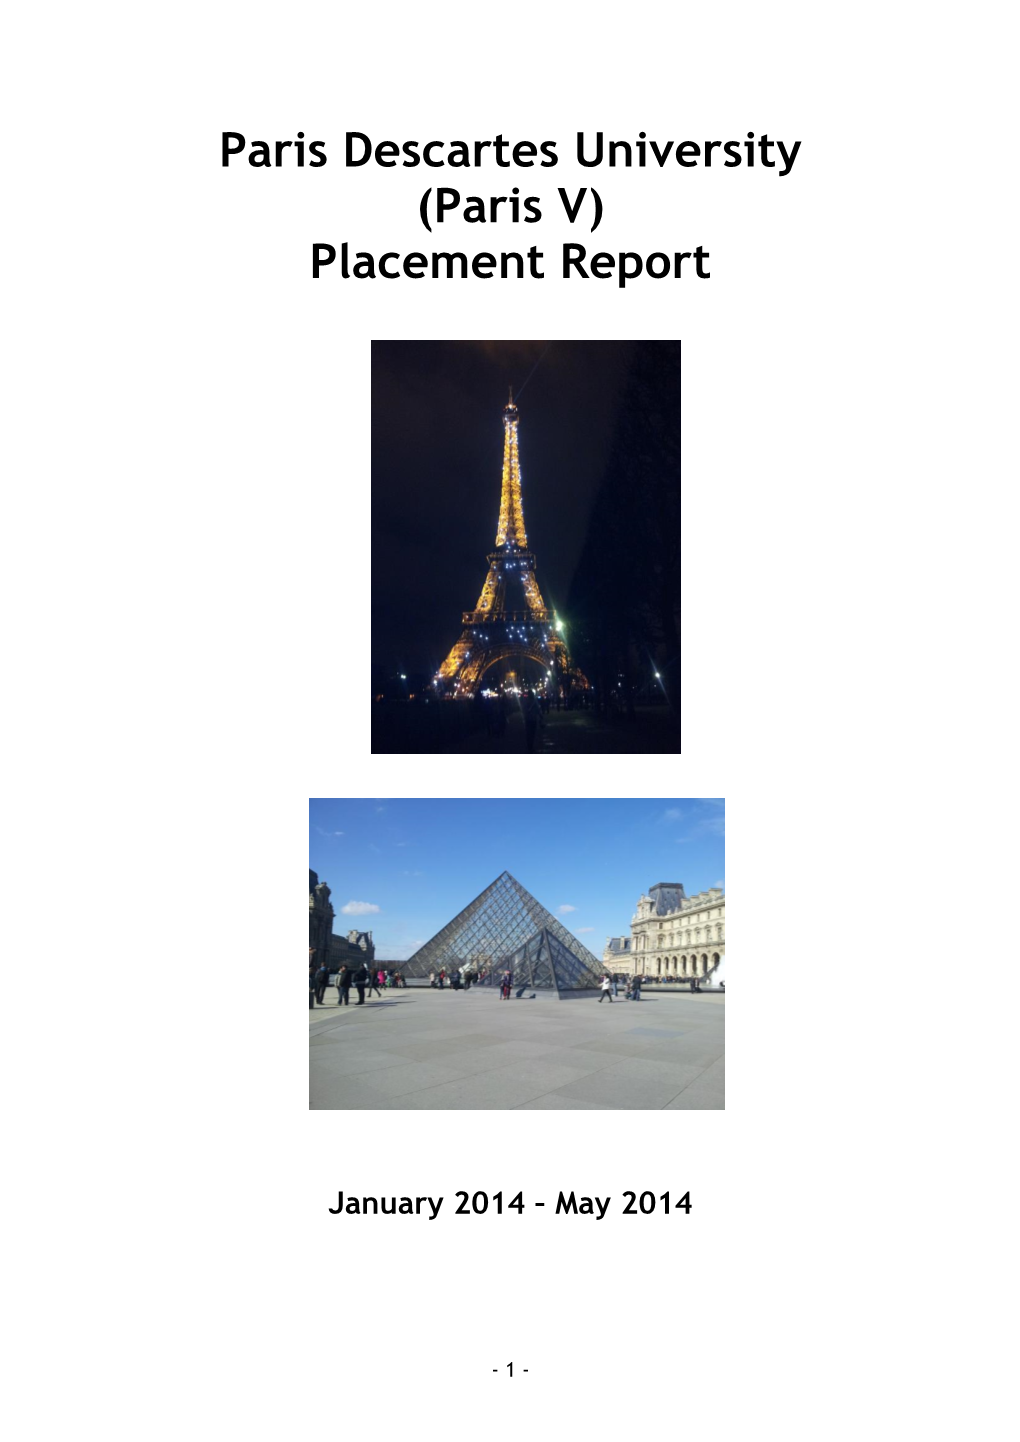 Paris Descartes University (Paris V) Placement Report